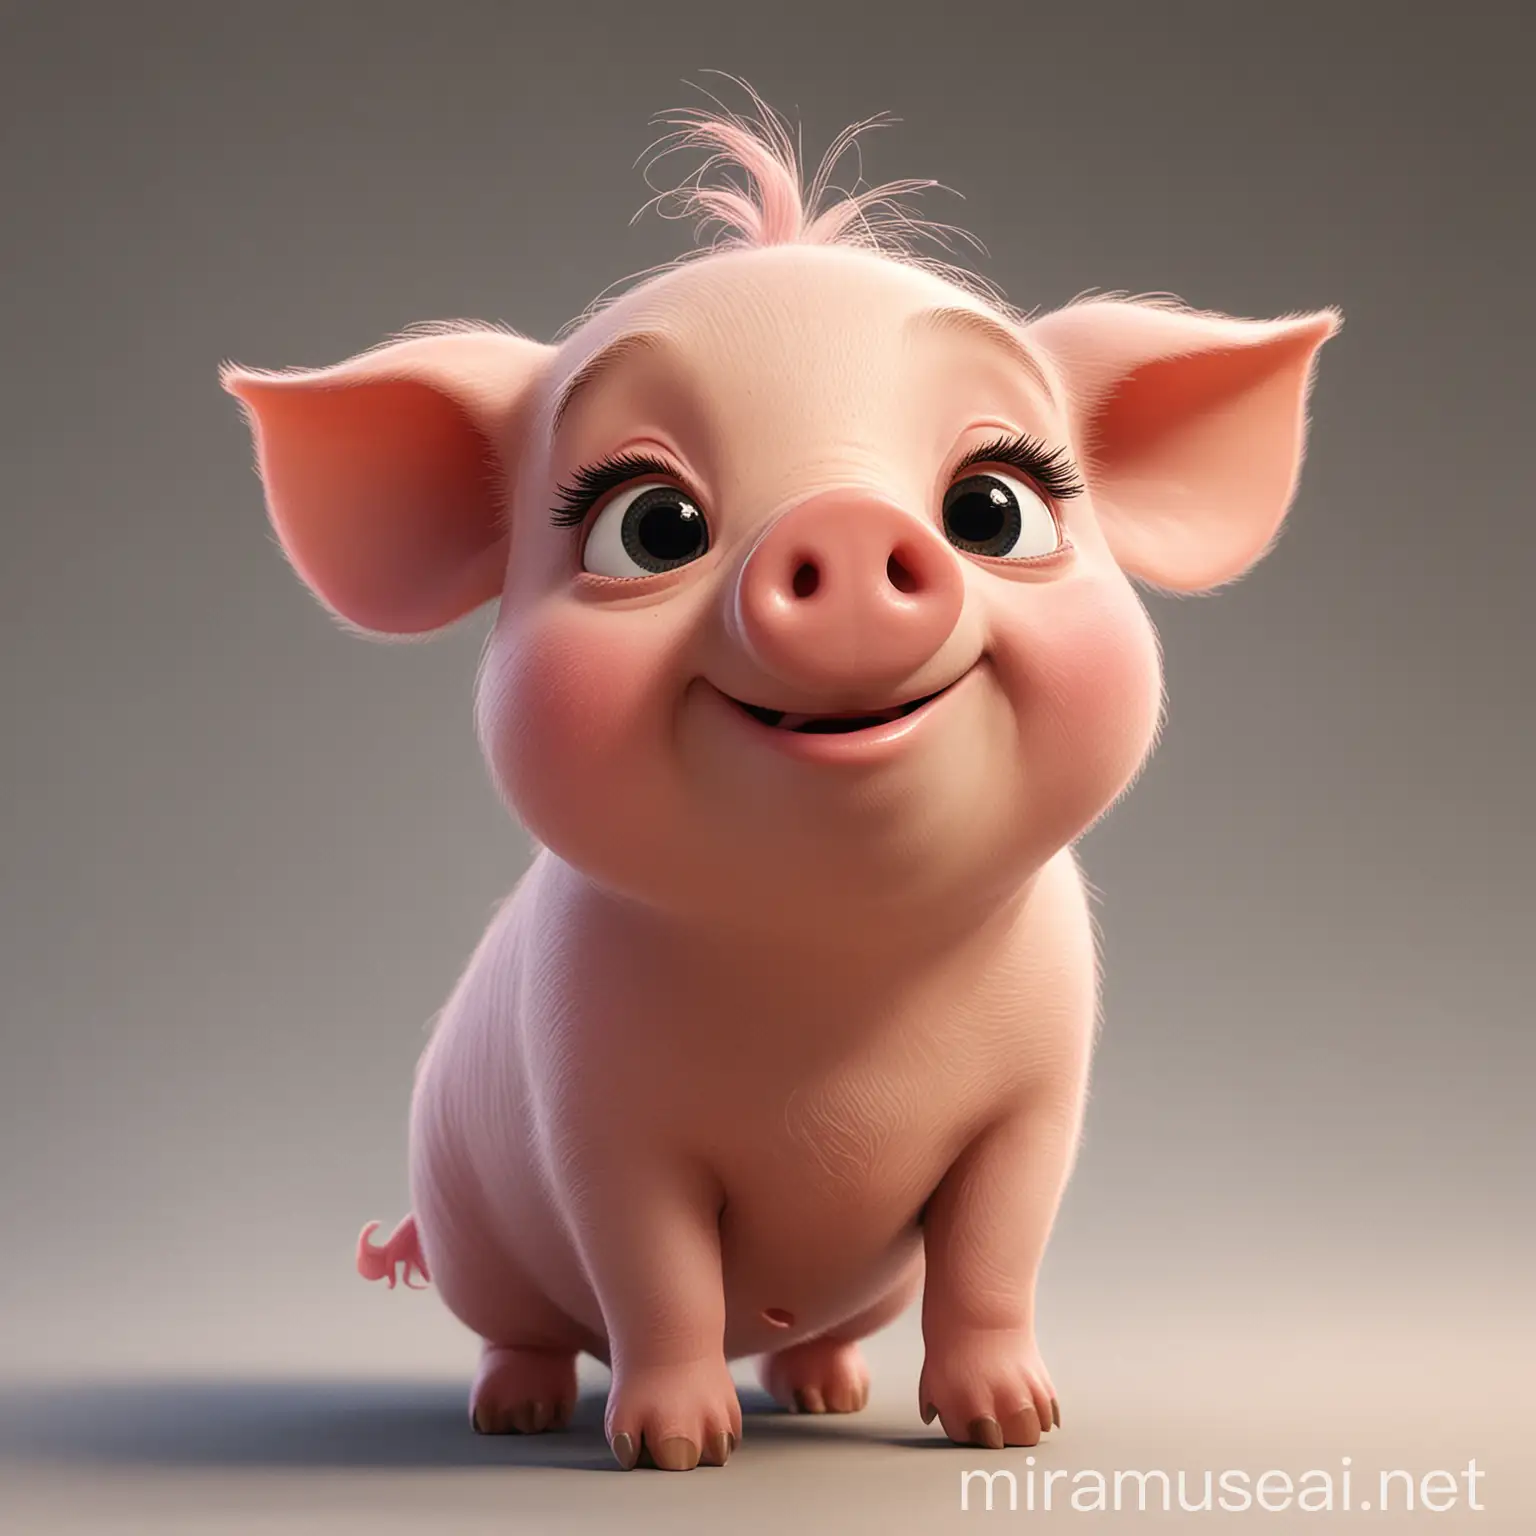 lovely pig，disney pixar style